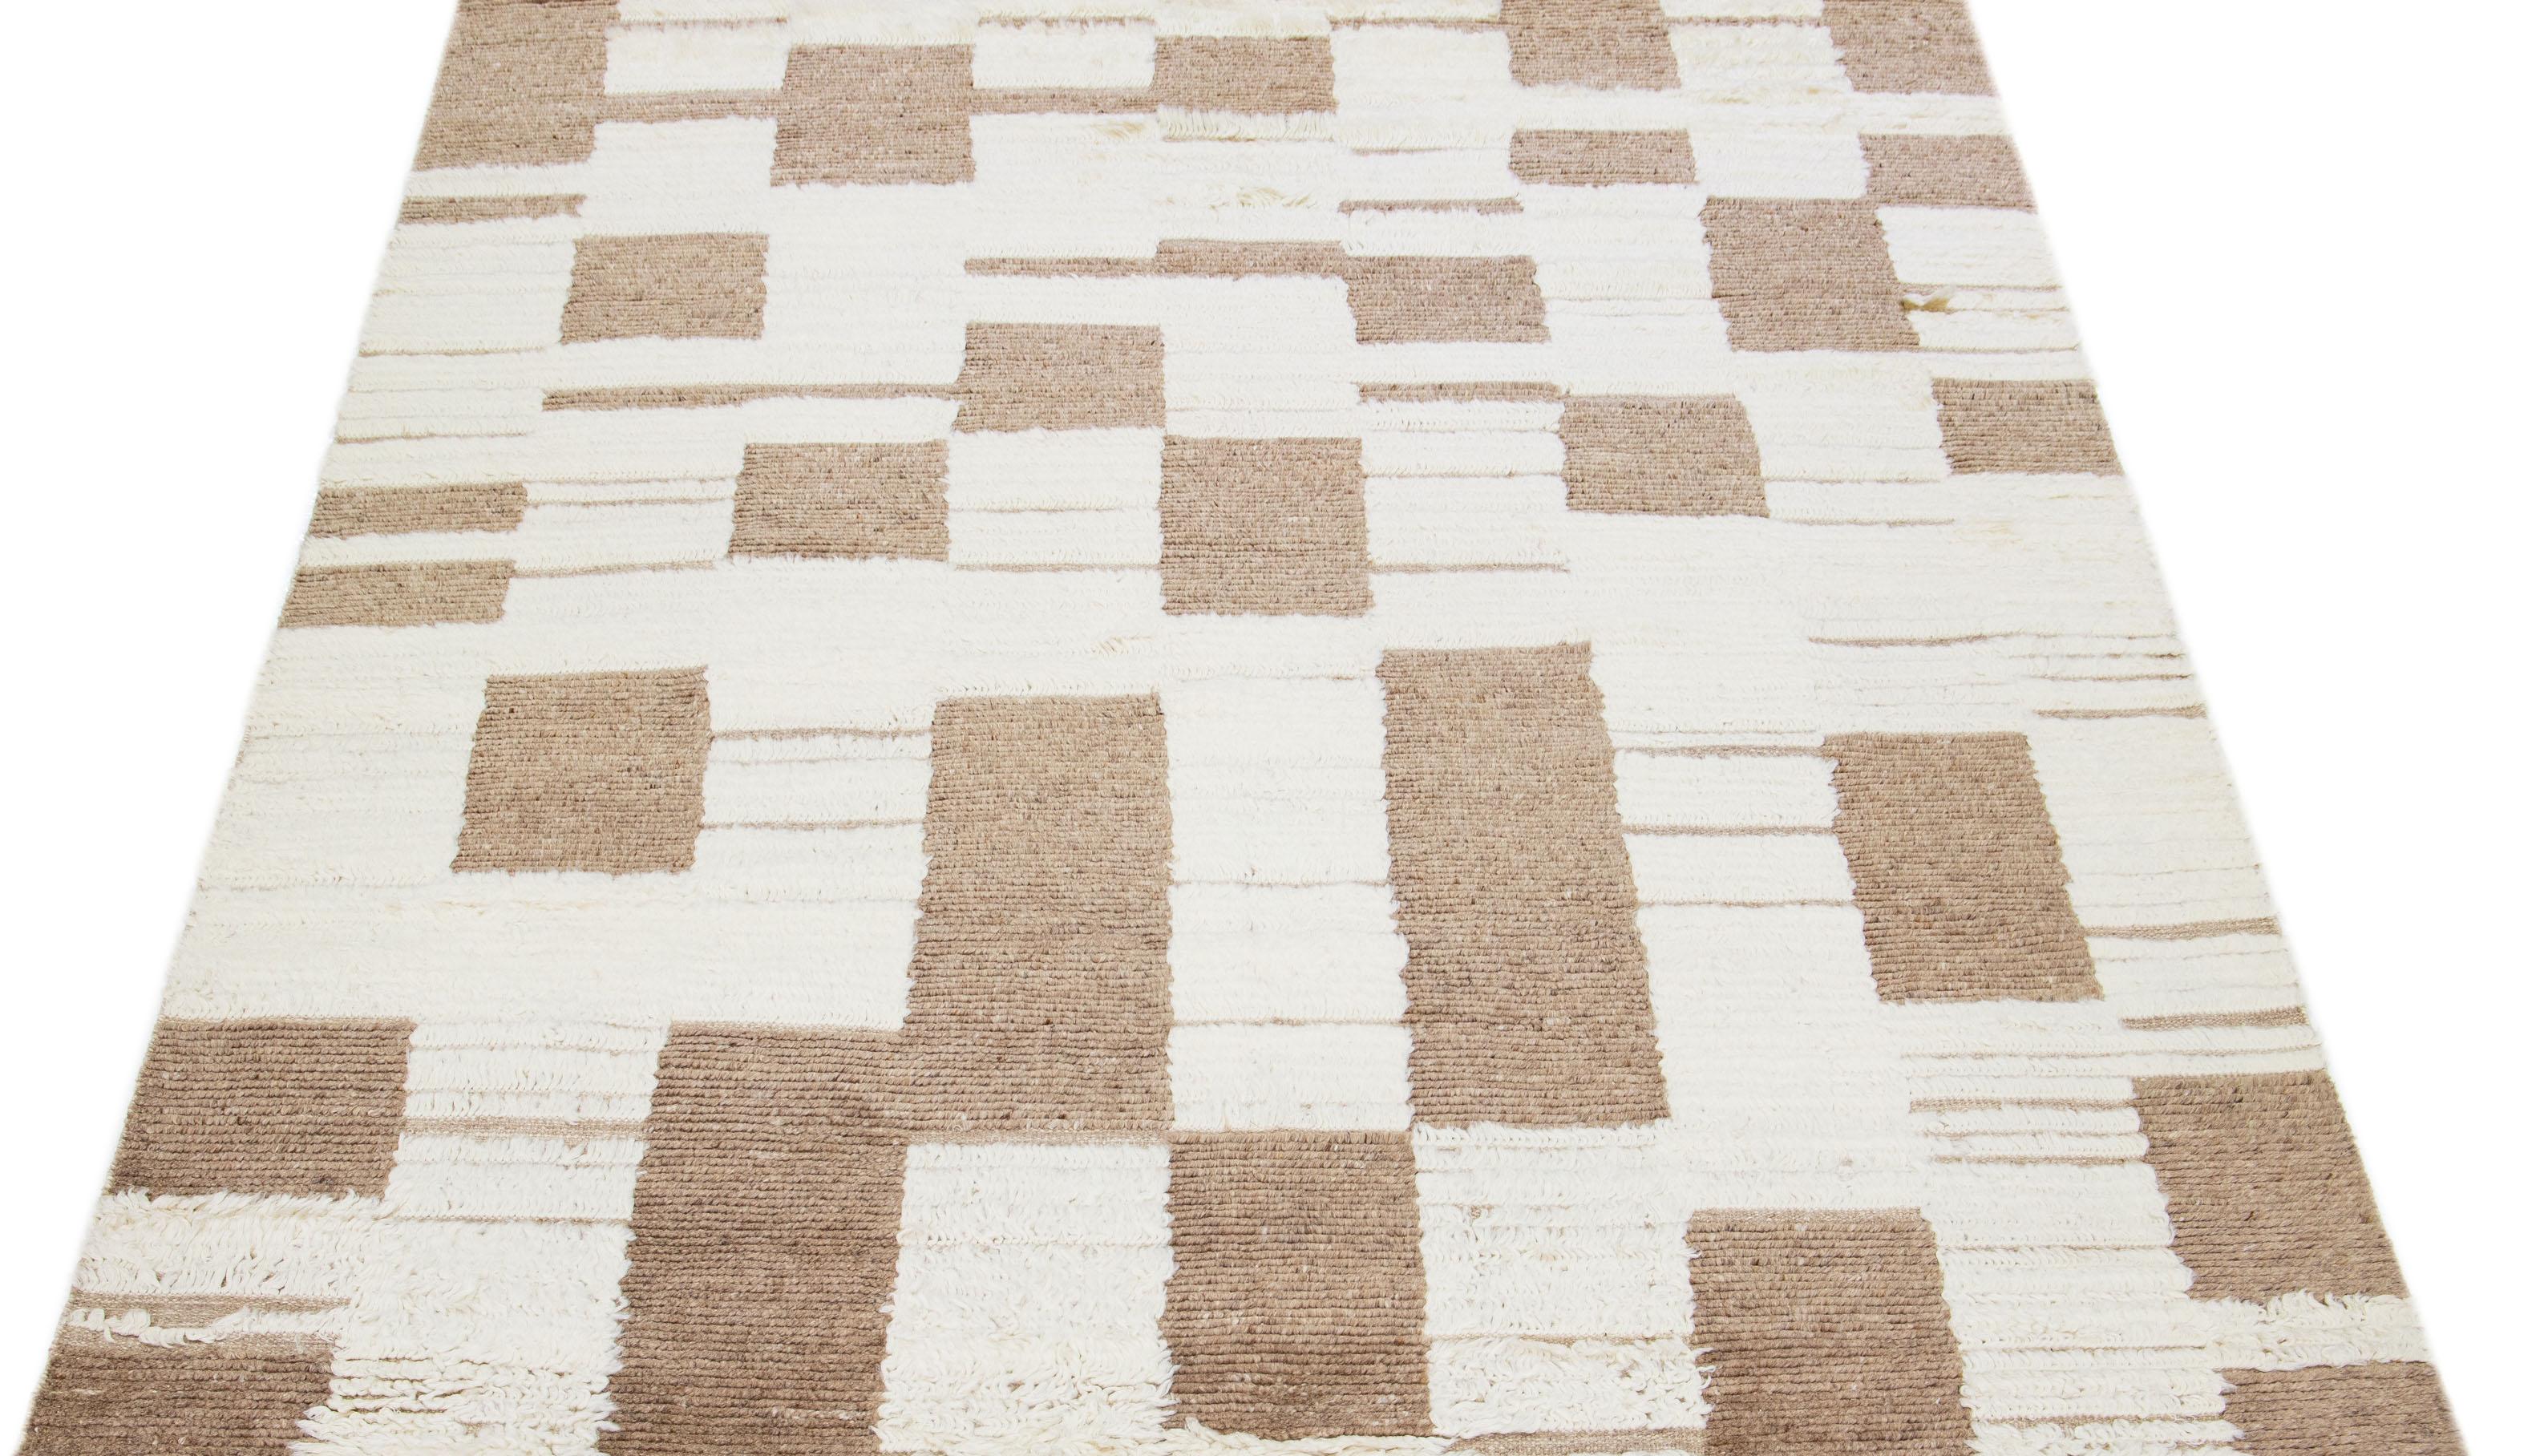 Dieser sorgfältig gearbeitete Wollteppich zeigt ein marokkanisches Muster, das in verschiedenen Brauntönen gewebt ist. Sein fesselndes elfenbeinfarbenes Gewebe bildet einen atemberaubenden Kontrast, der die Schönheit des Teppichs insgesamt